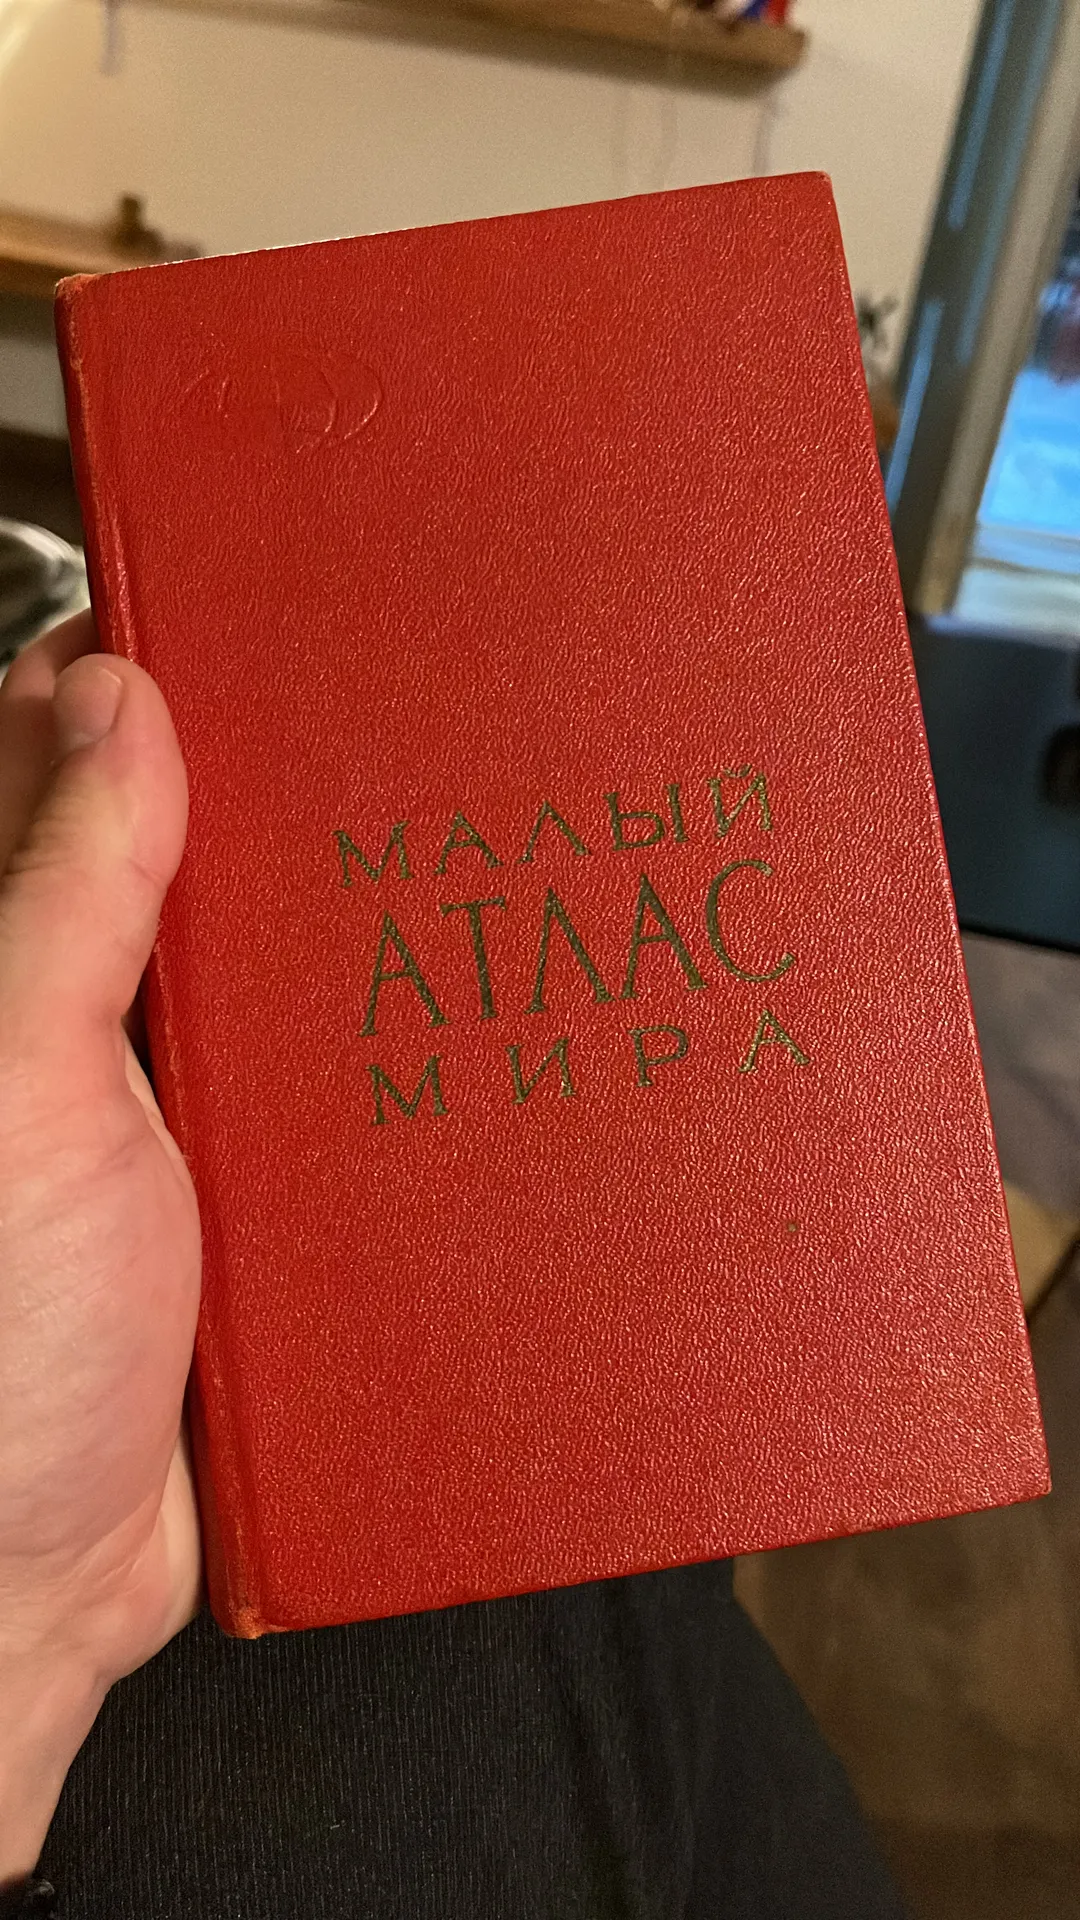 De kaft van de atlas, uitgebracht in 1970.